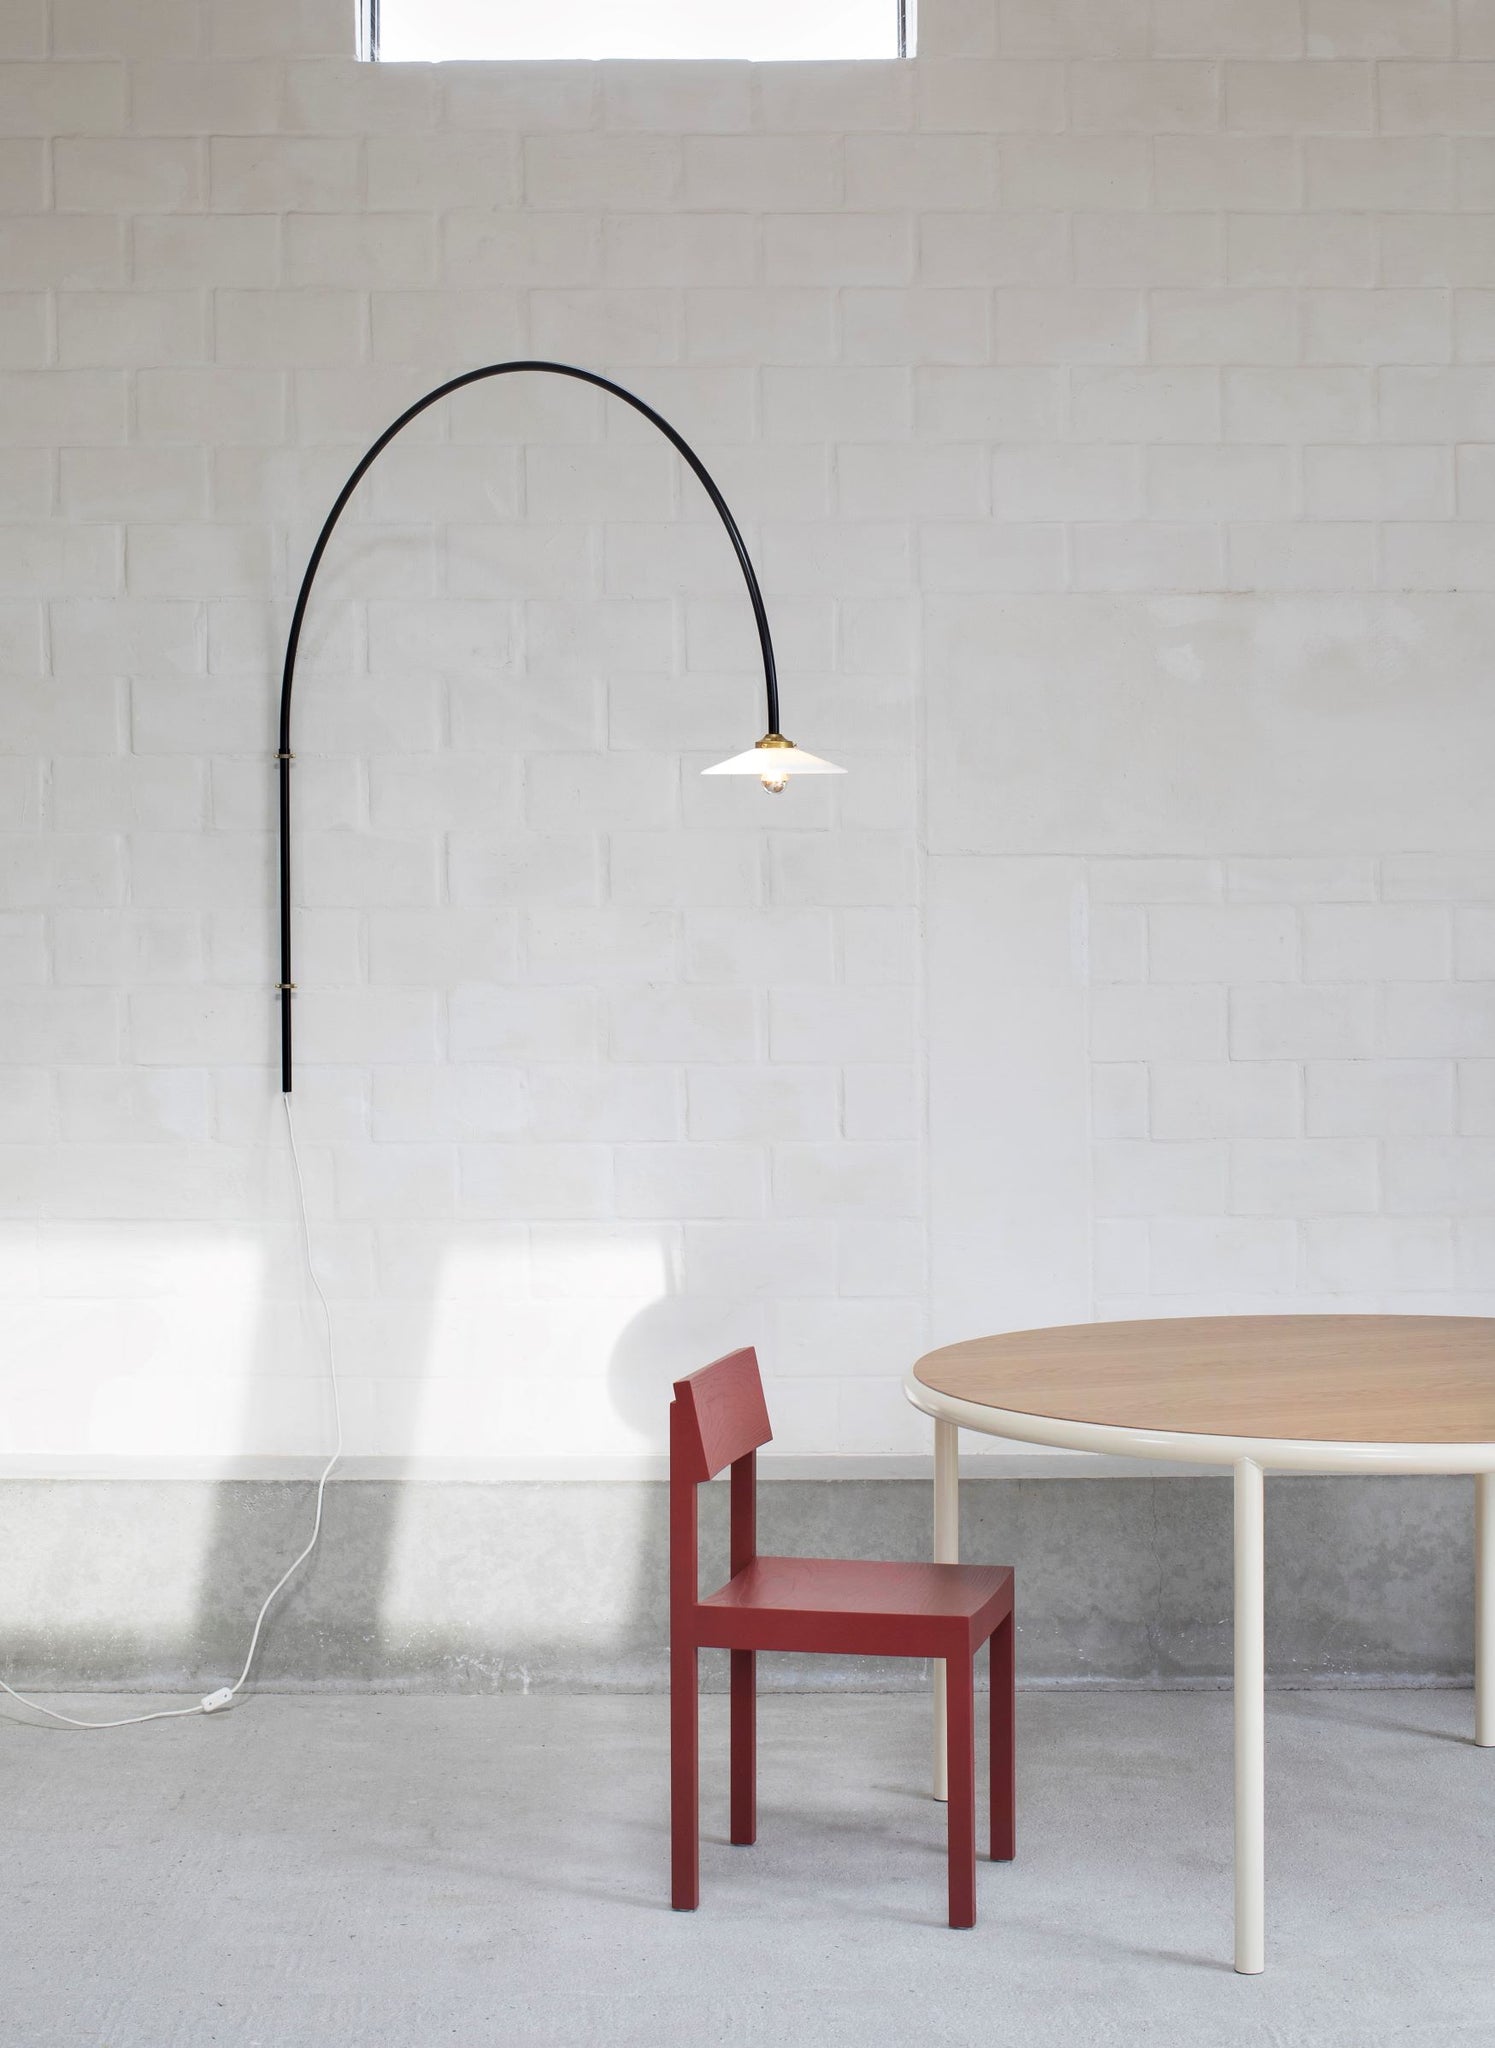 Valerie Objects - Hanging Lamp no 3 - Muller van Severen